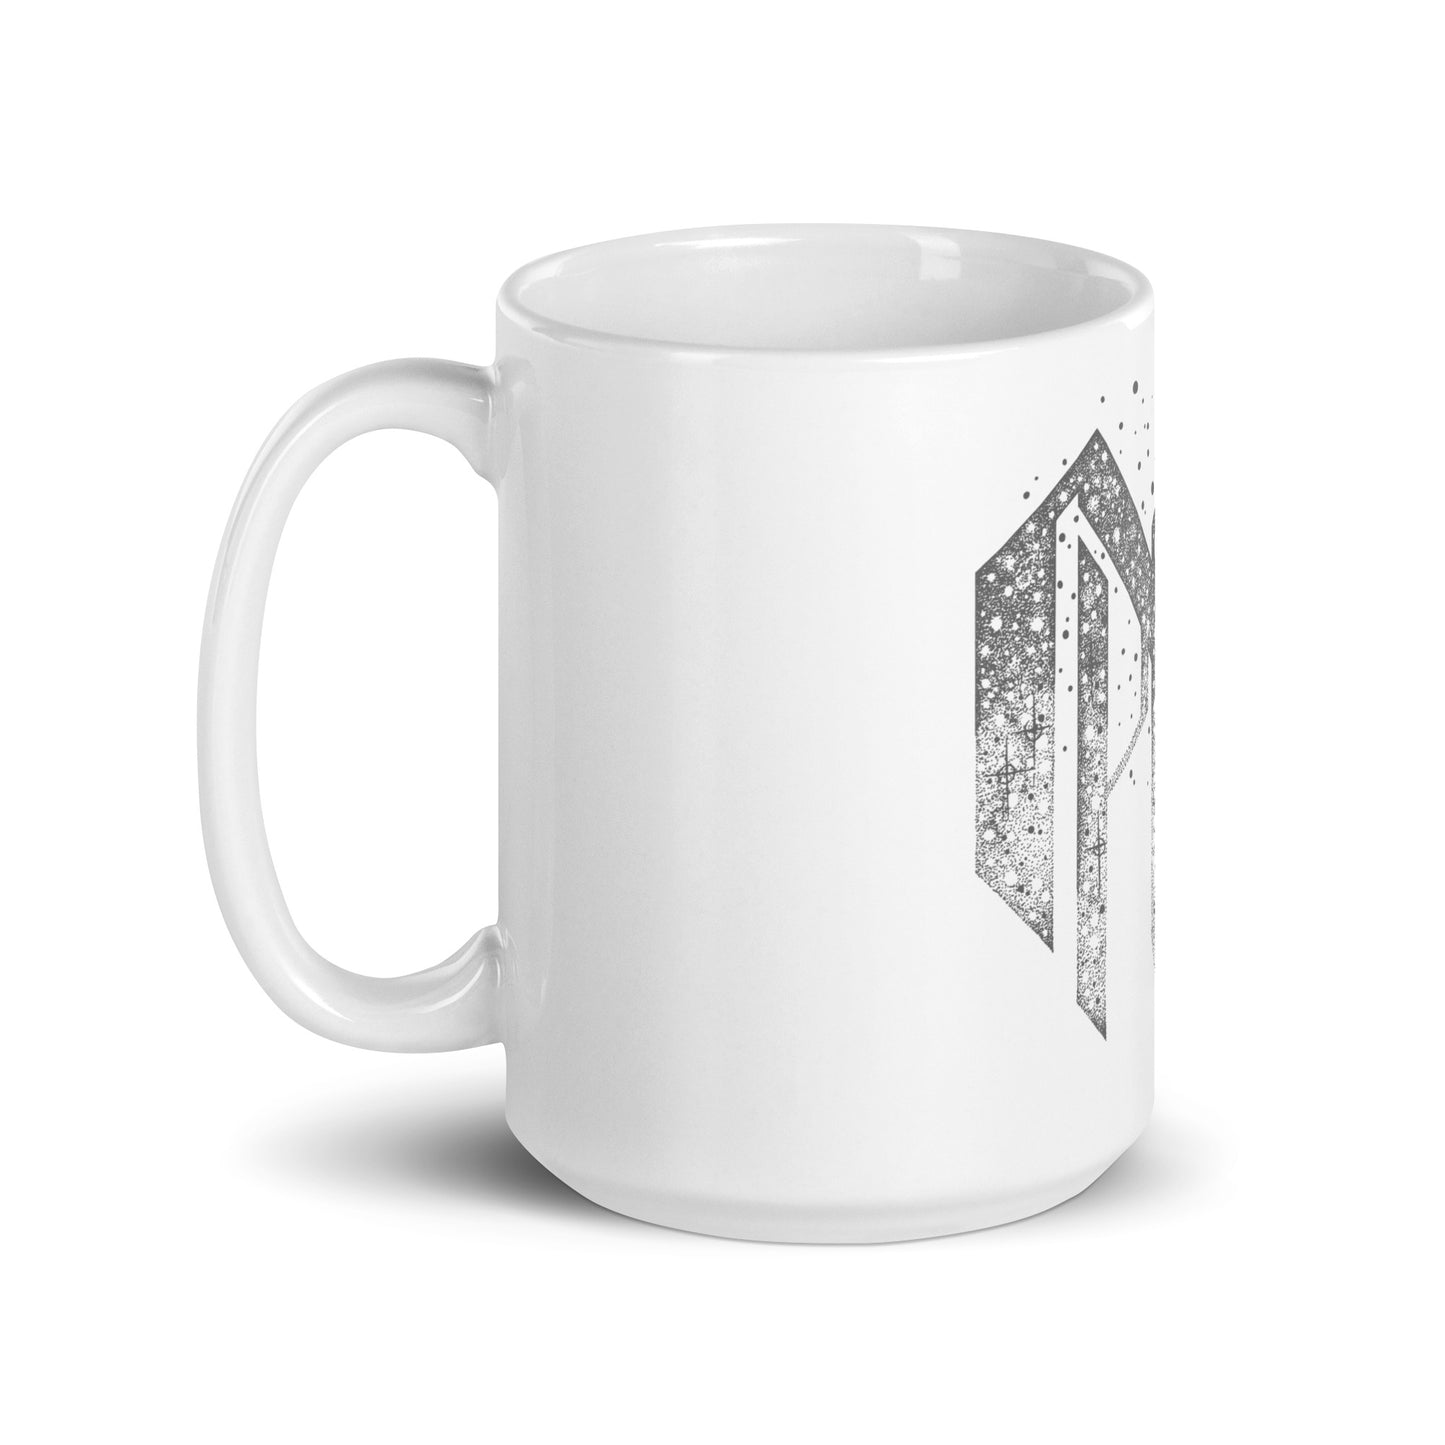 FSCR - White Glossy Mug